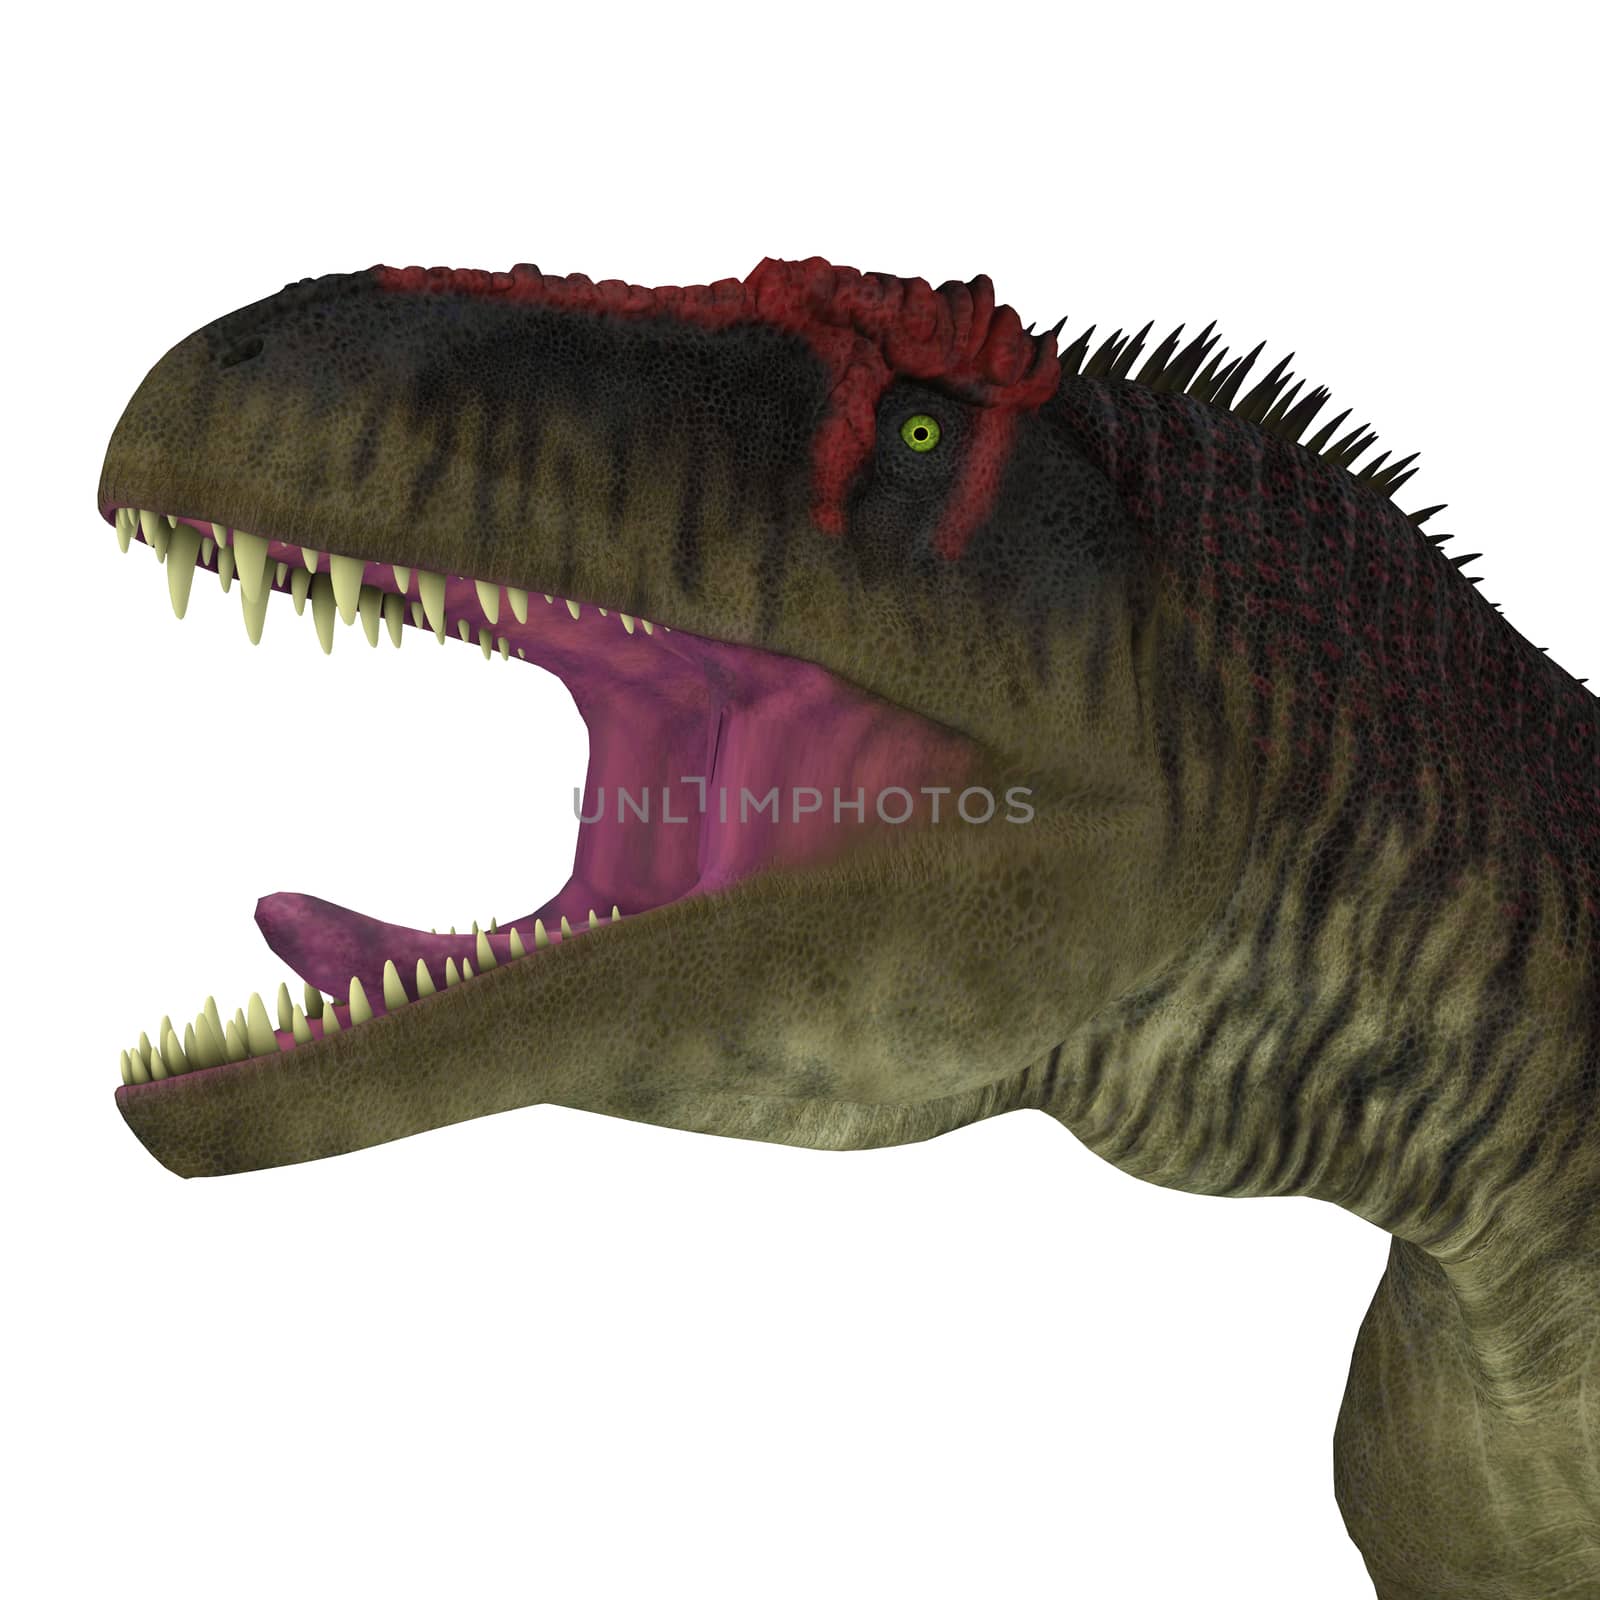 Tyrannotitan Dinosaur Head by Catmando